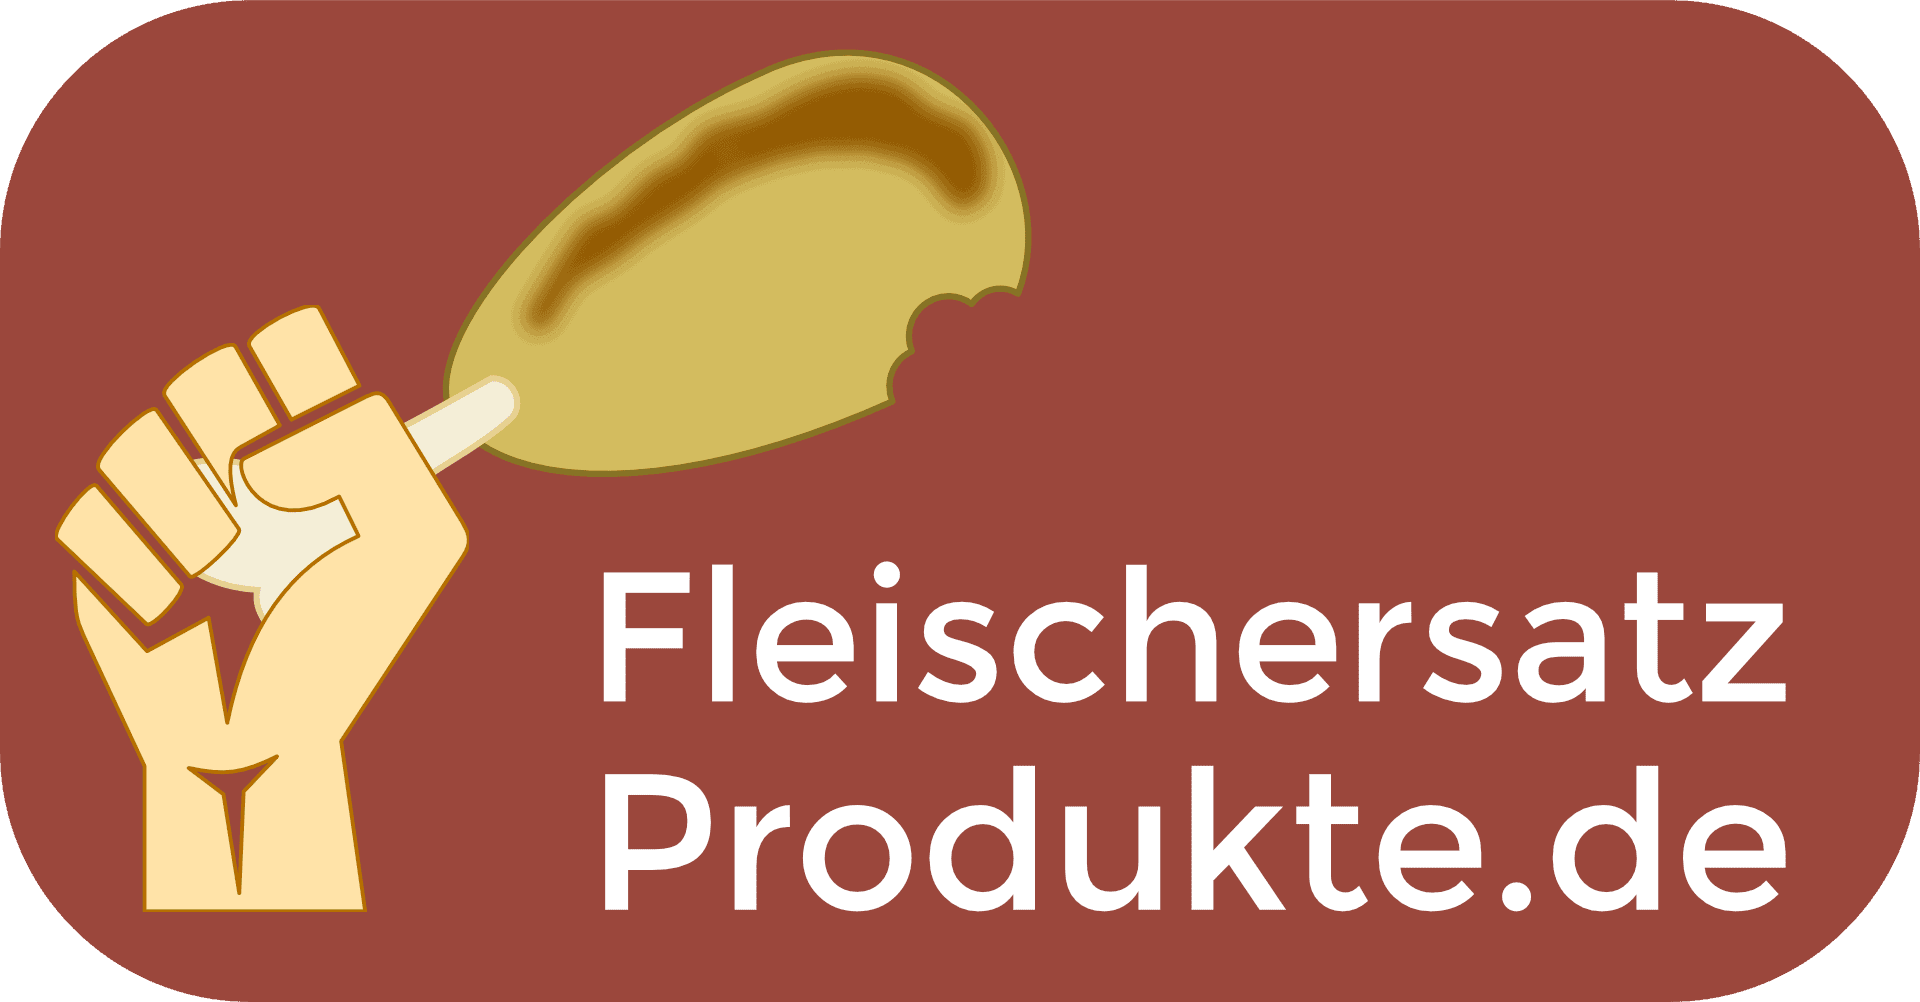 Fleischersatz Fleischalternative Produkte CD | Fleischersatz-Produkte.de